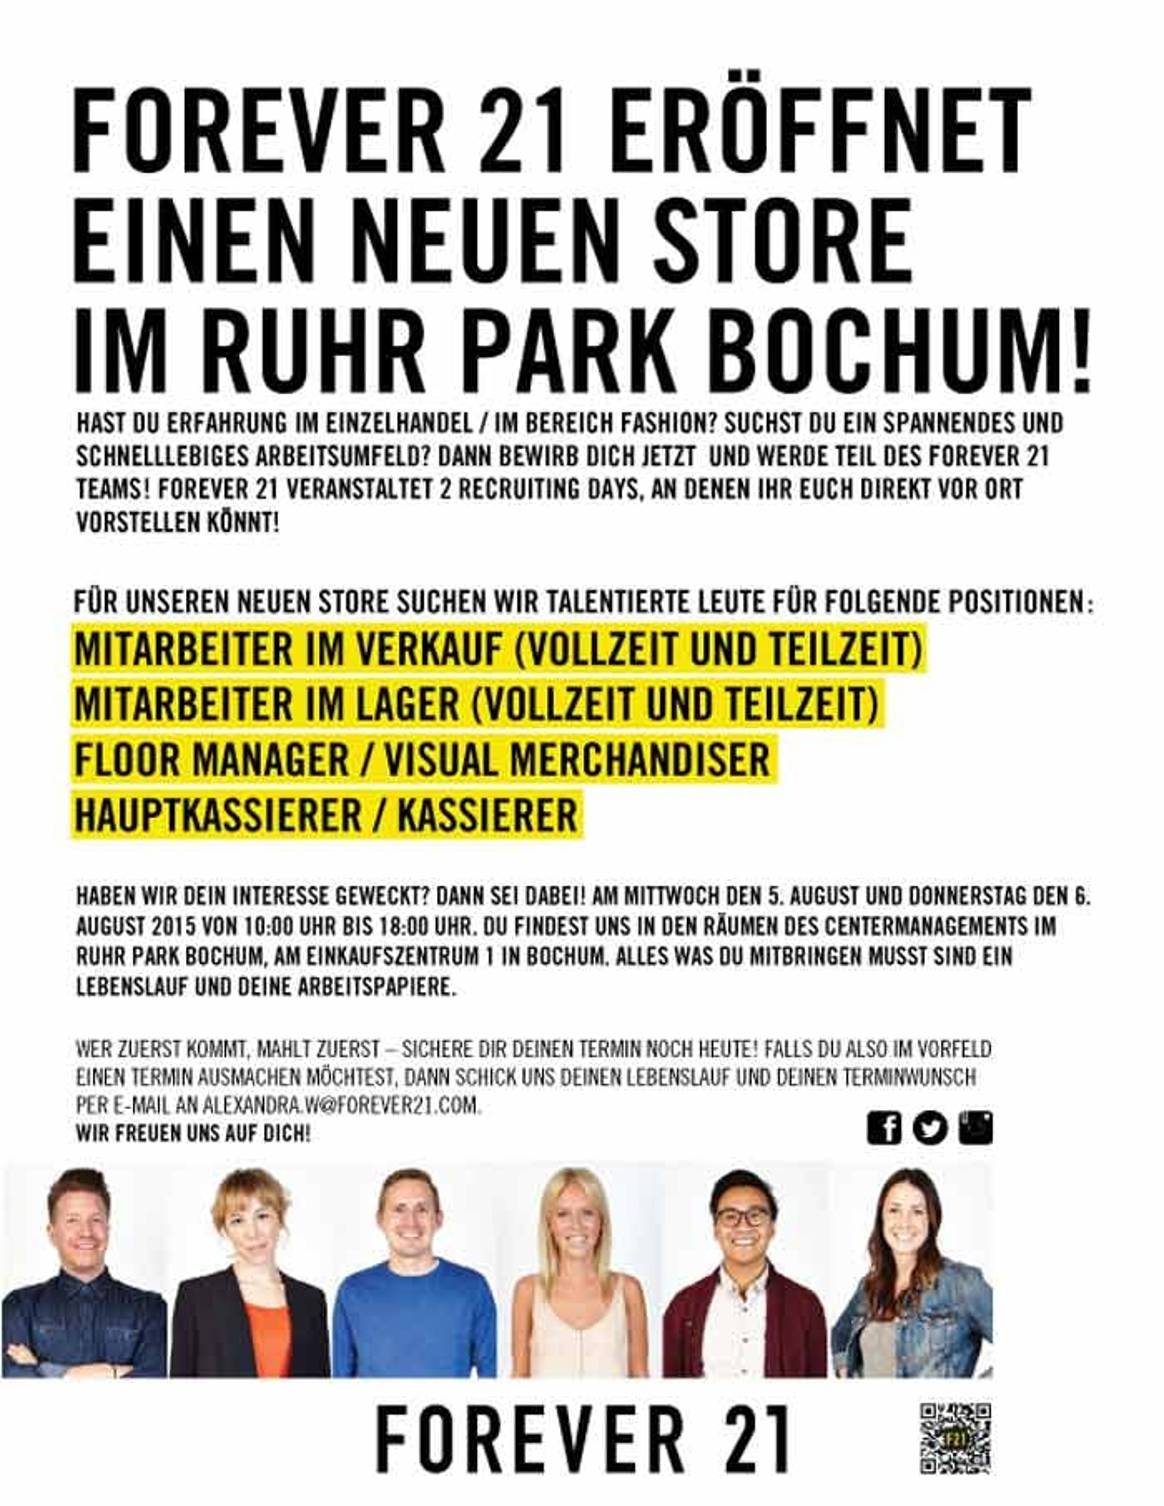 Forever 21 eröffnet einen neuen Store im Ruhr Park Bochum